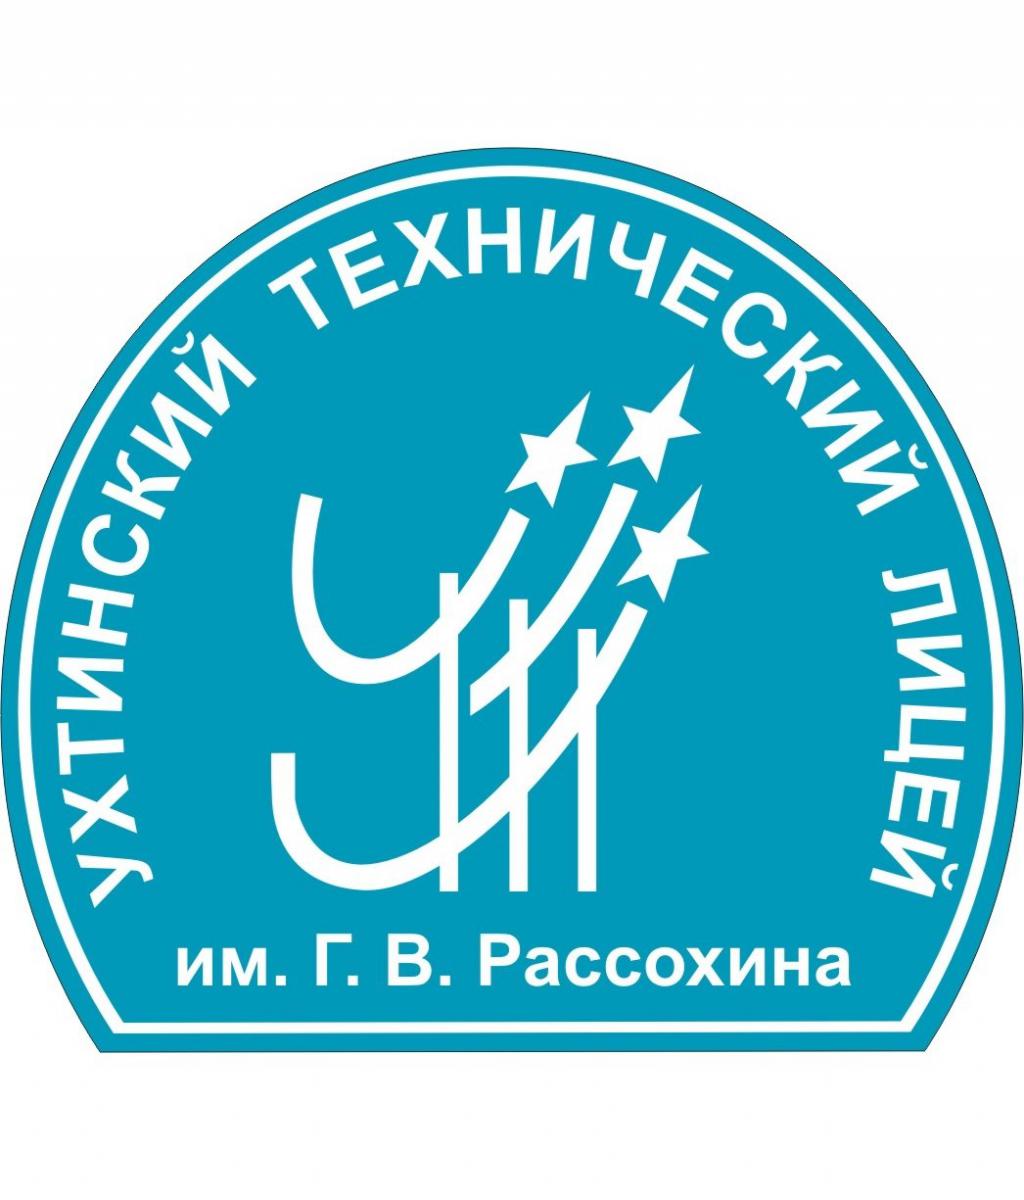 Логотип (Ухтинский технический лицей им. Г. В. Рассохина)